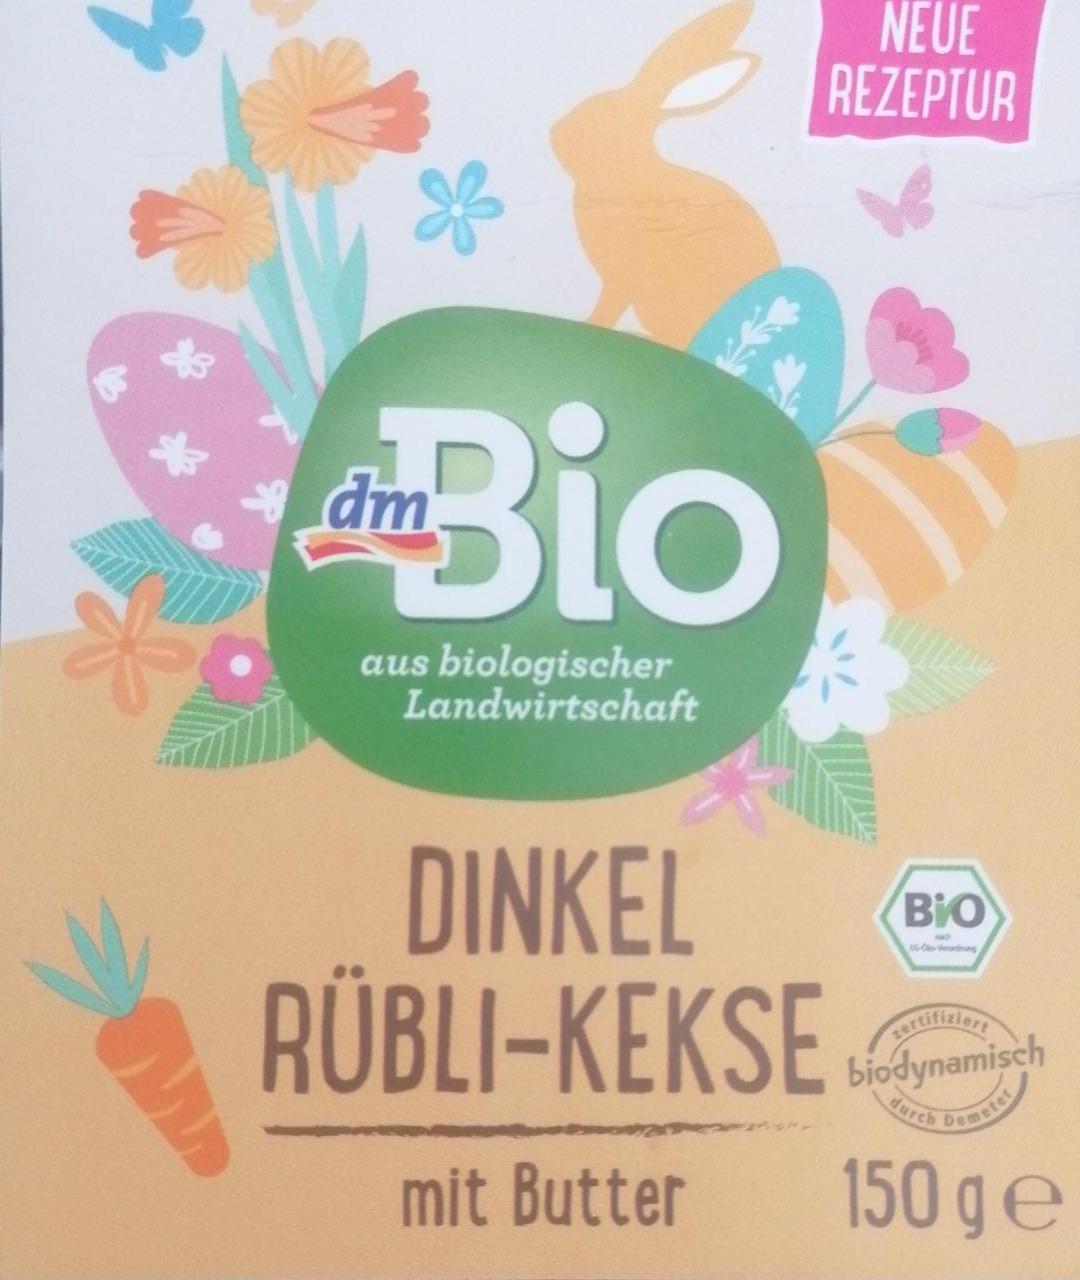 Fotografie - Dinkel Rübli-Kekse mit Butter dmBio